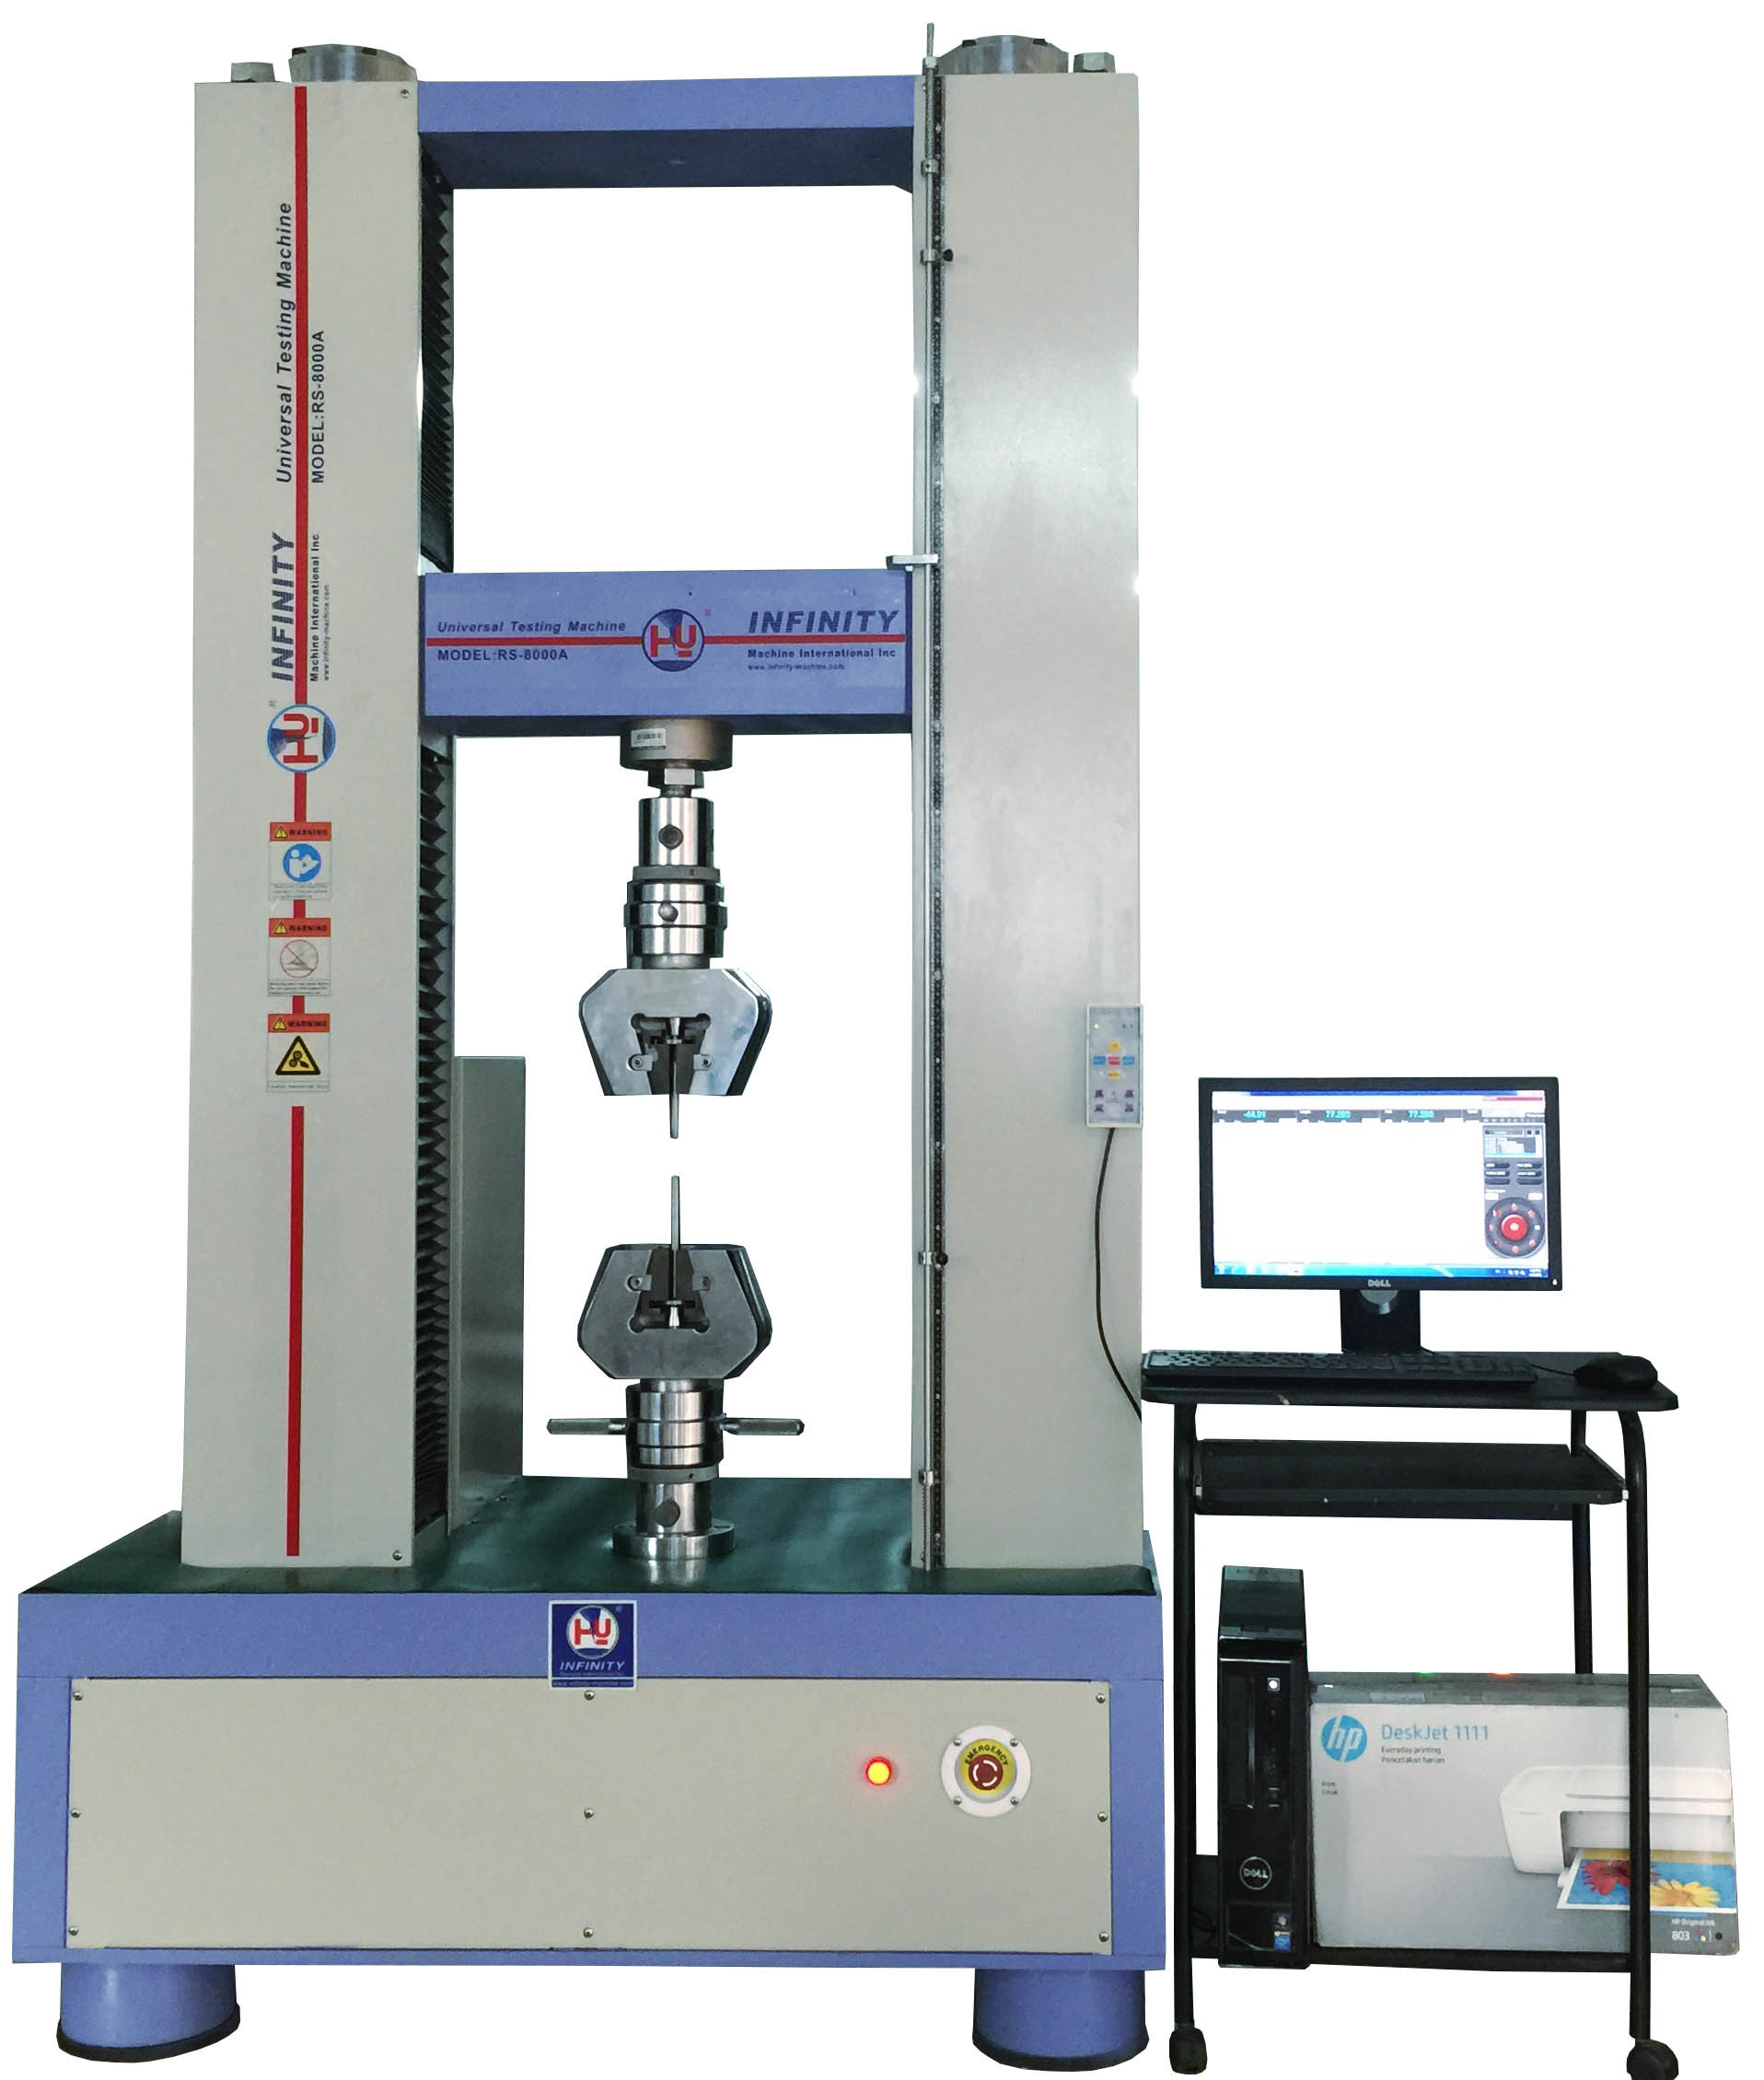 Industriële elektronische testmachine voor het testen van de trekkracht van rubber met een software voor de controle van de gesloten lus